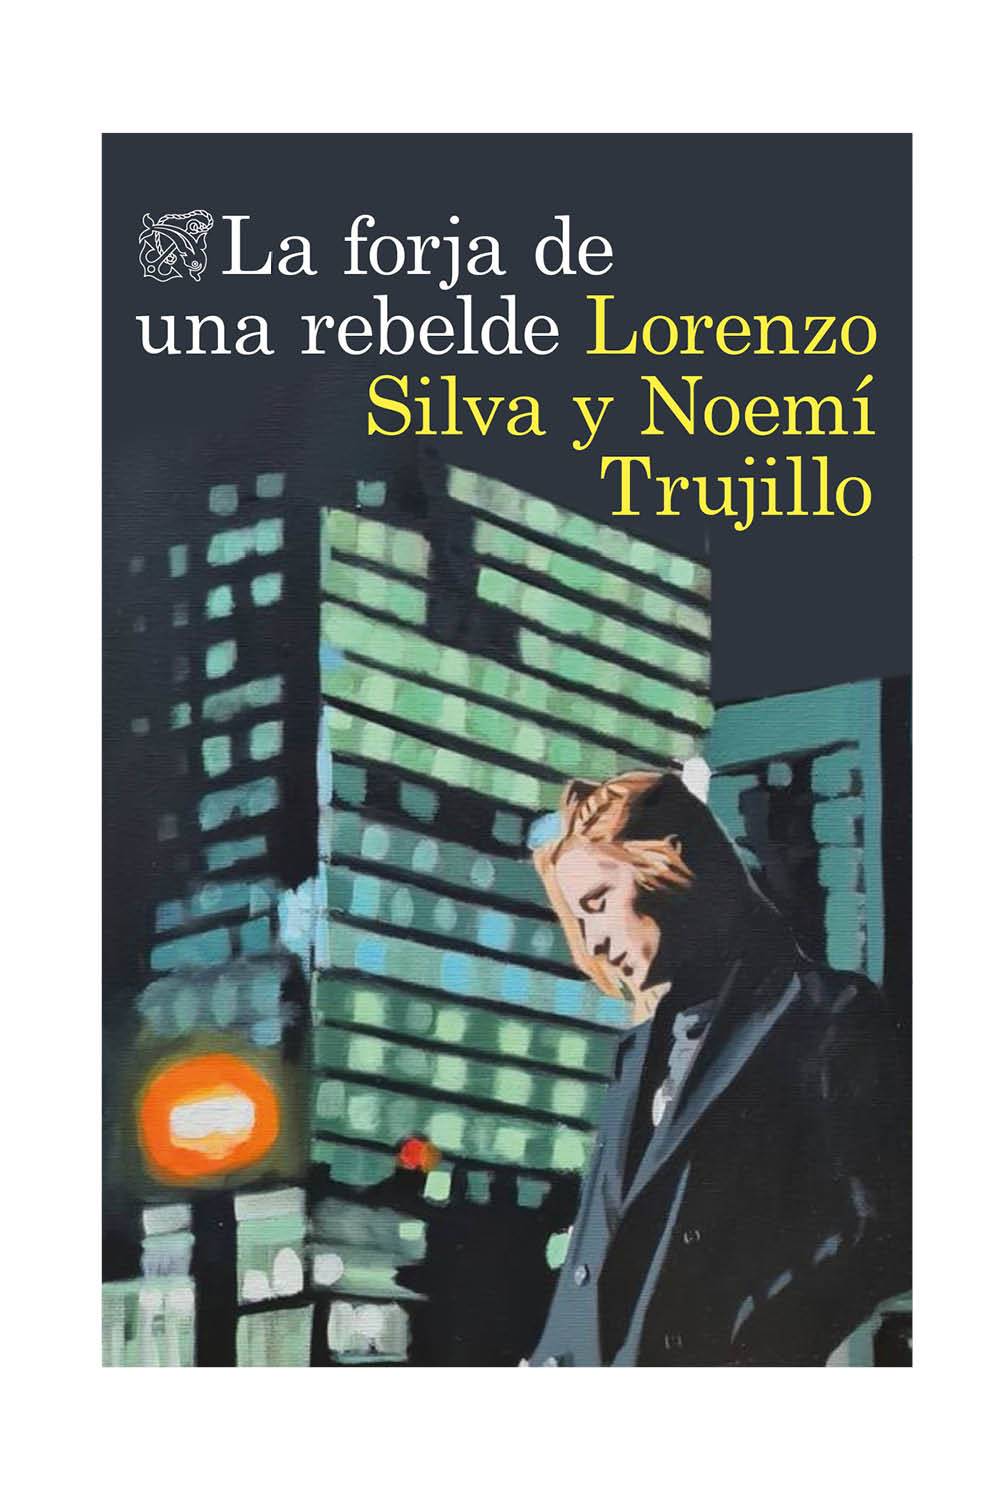 La forja de una rebelde de Lorenzo Silva y Noemí Trujillo